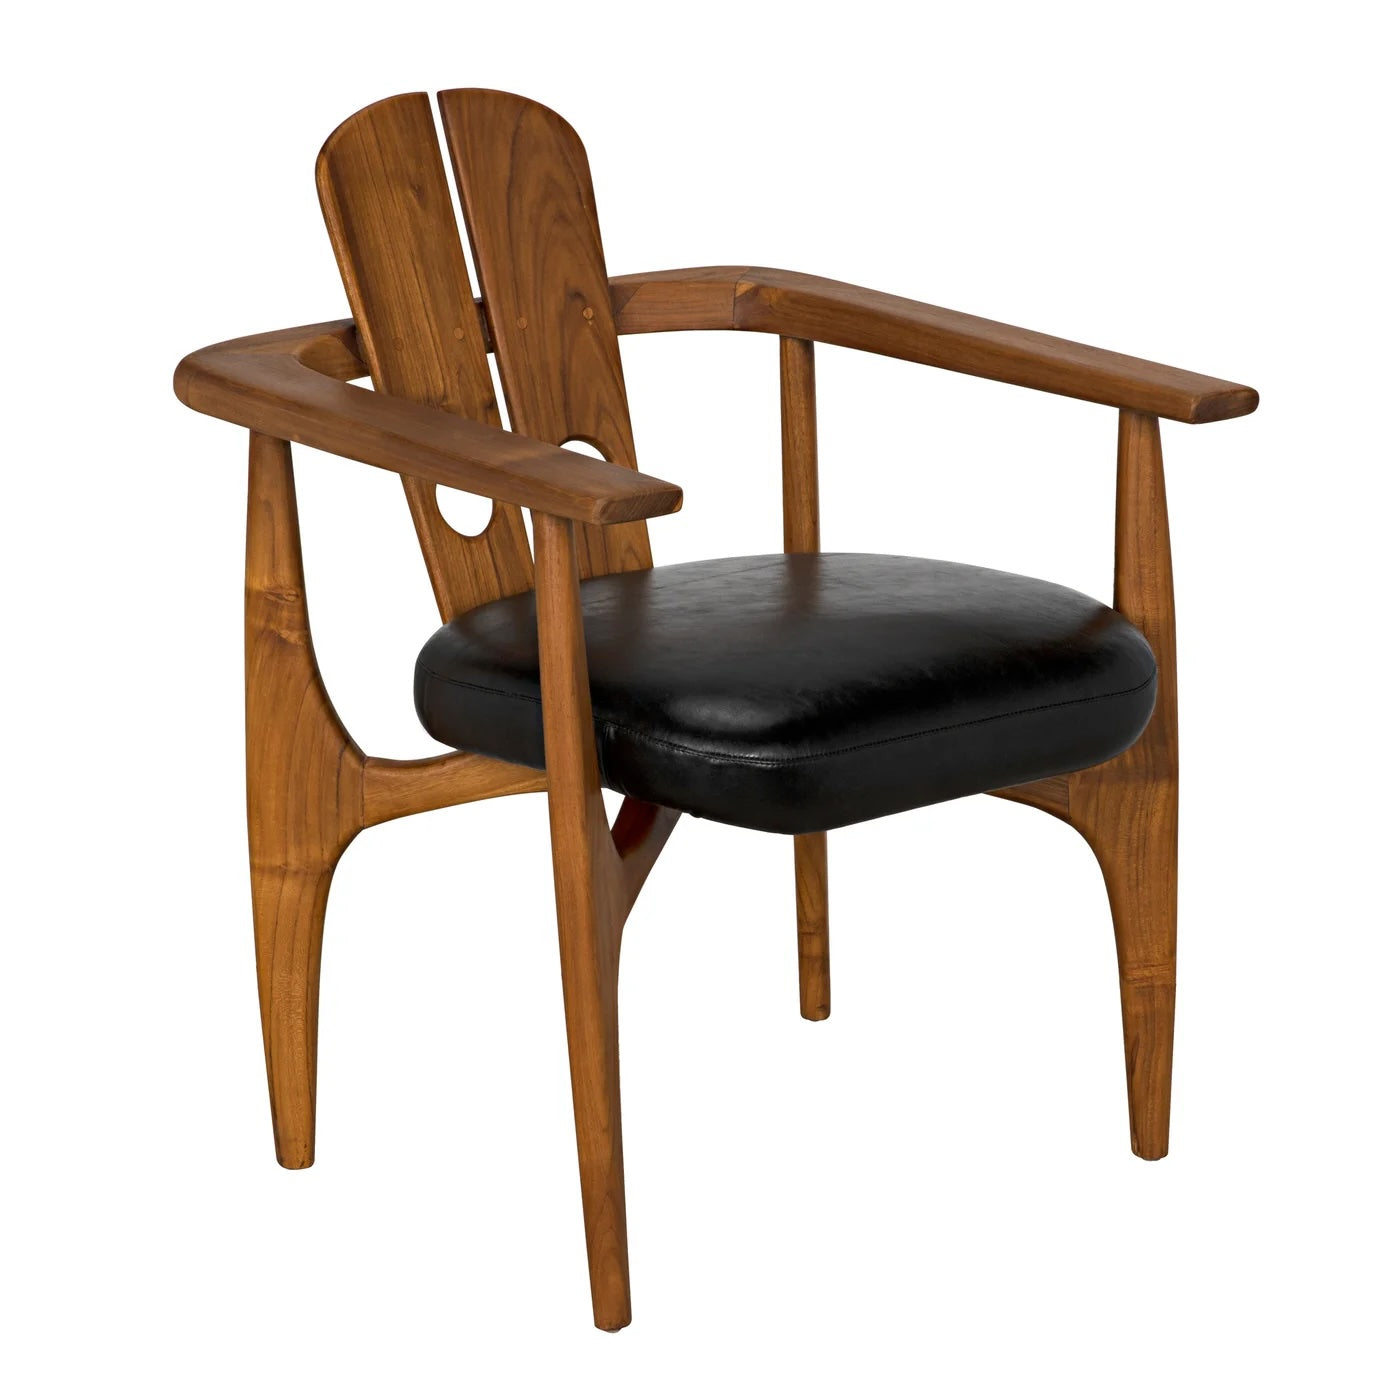 Kato Chair